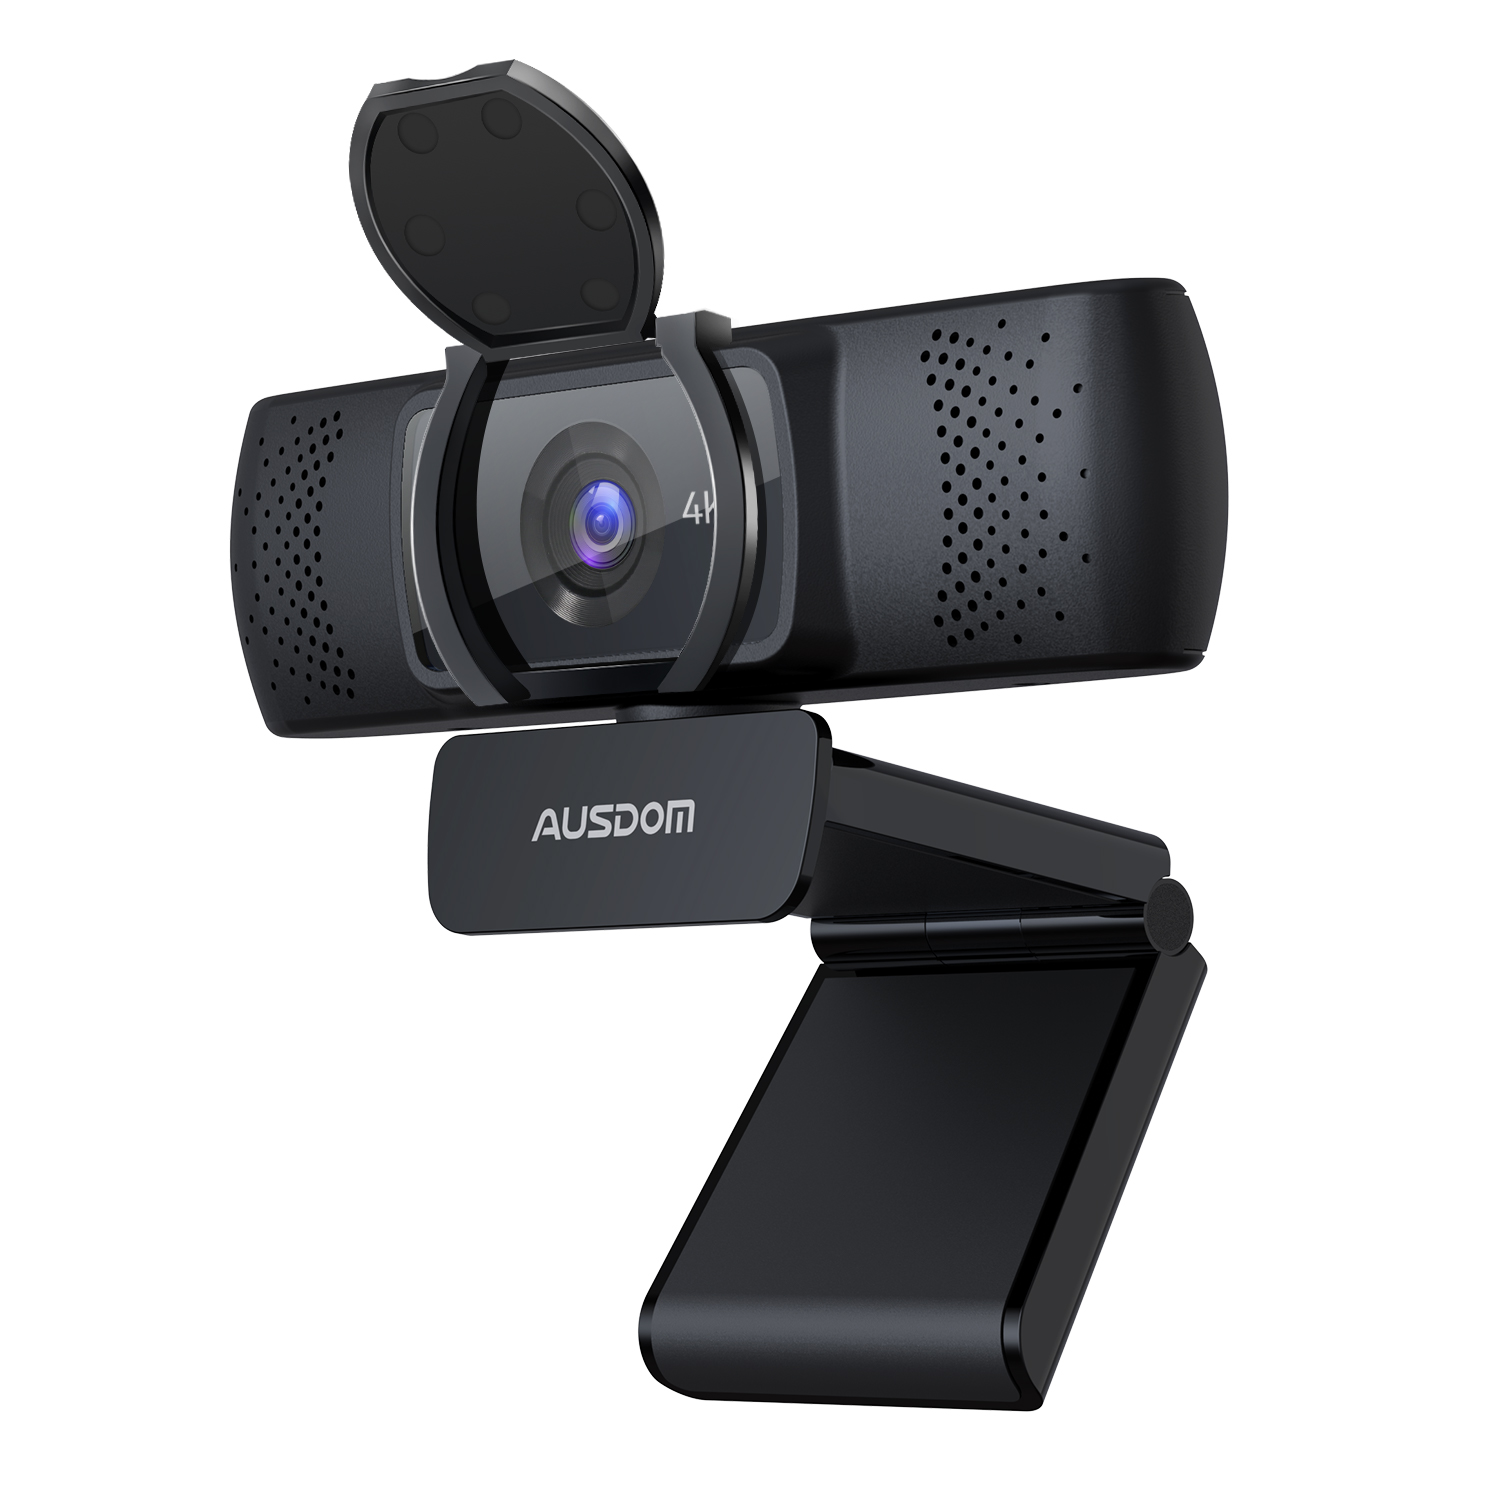 AUSDOM 4K Webcam, UHD 8MP Autofocus Webcam with